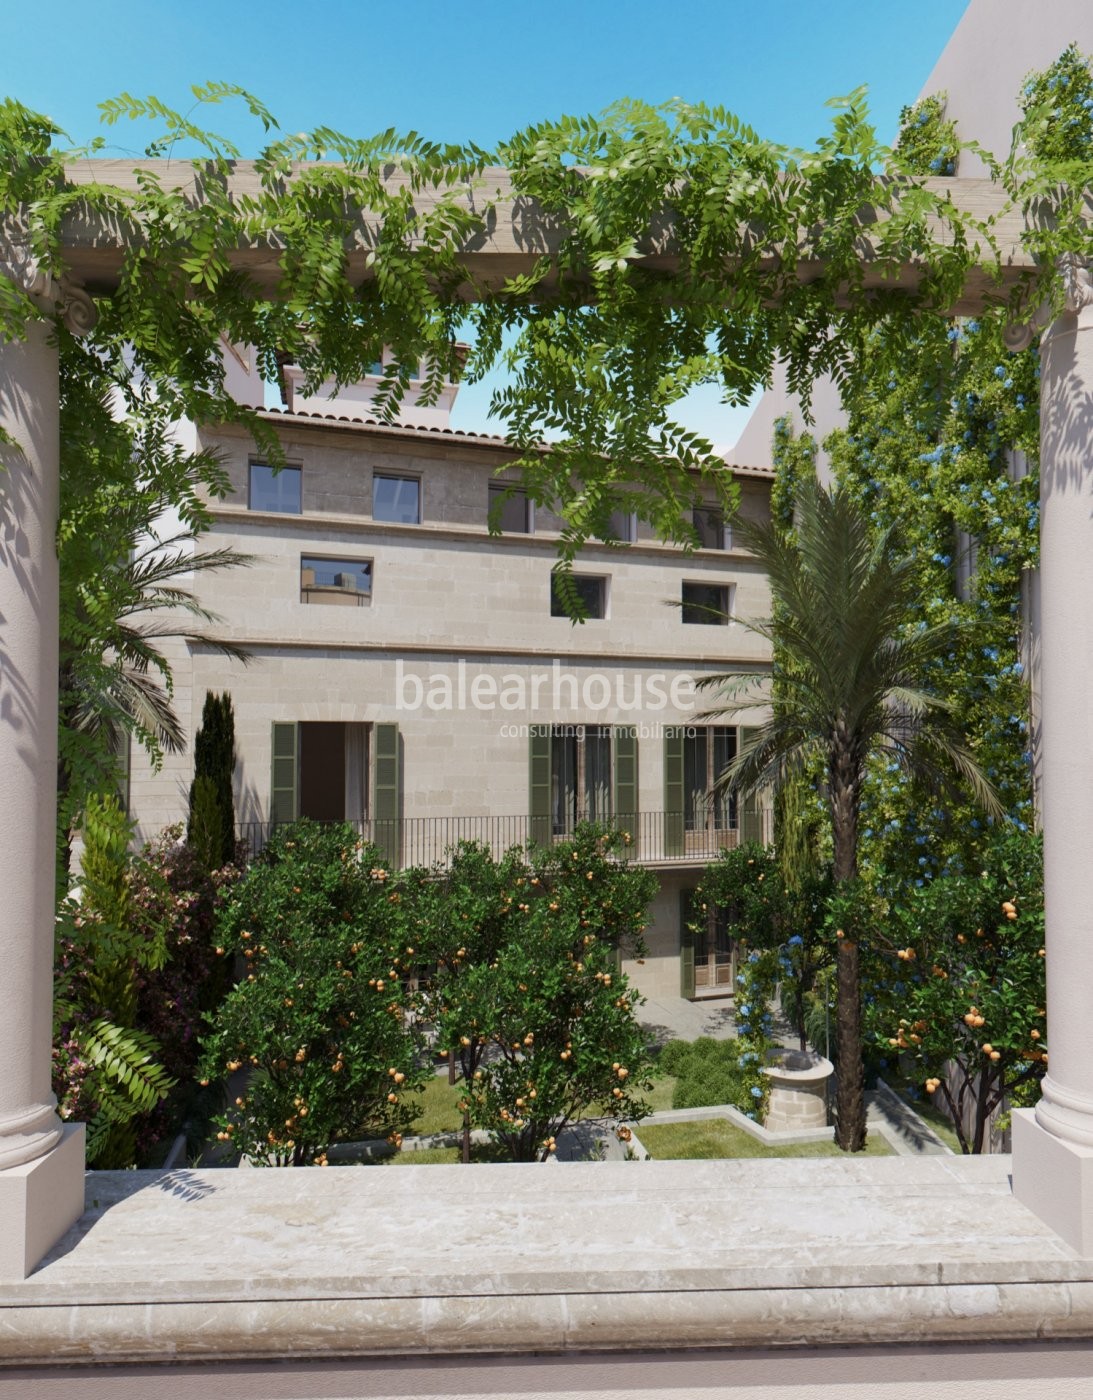 Prächtige Palastetage mit Garten, modern und gemütlich, im historischen Zentrum von Palma.